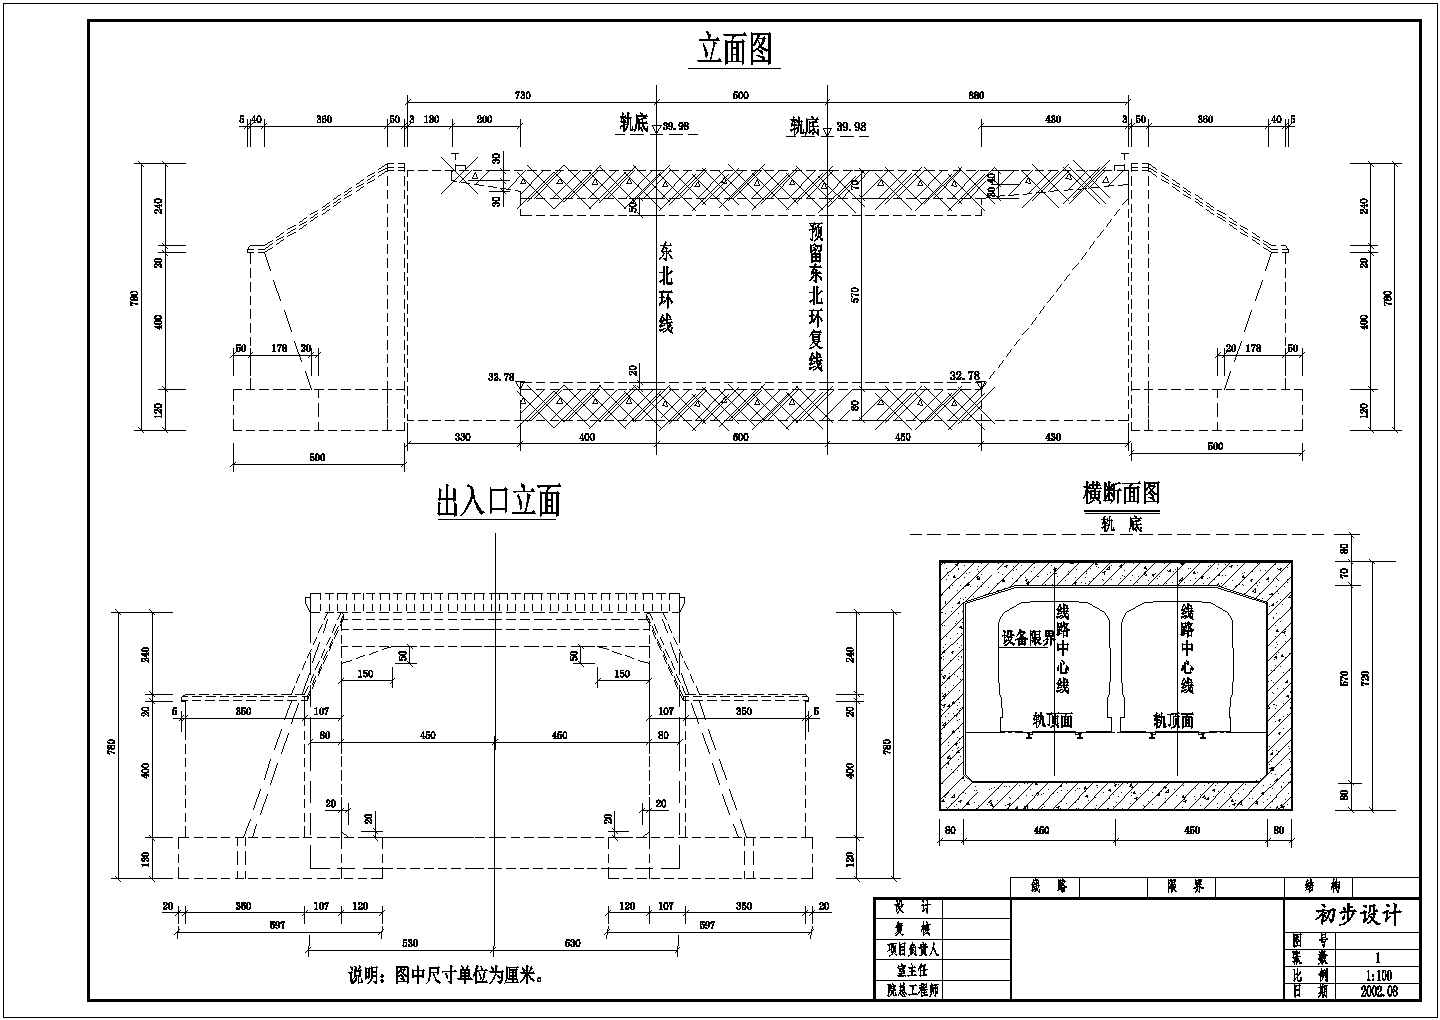 北京地铁五号线某合同段土建工程顶进箱涵施工工法